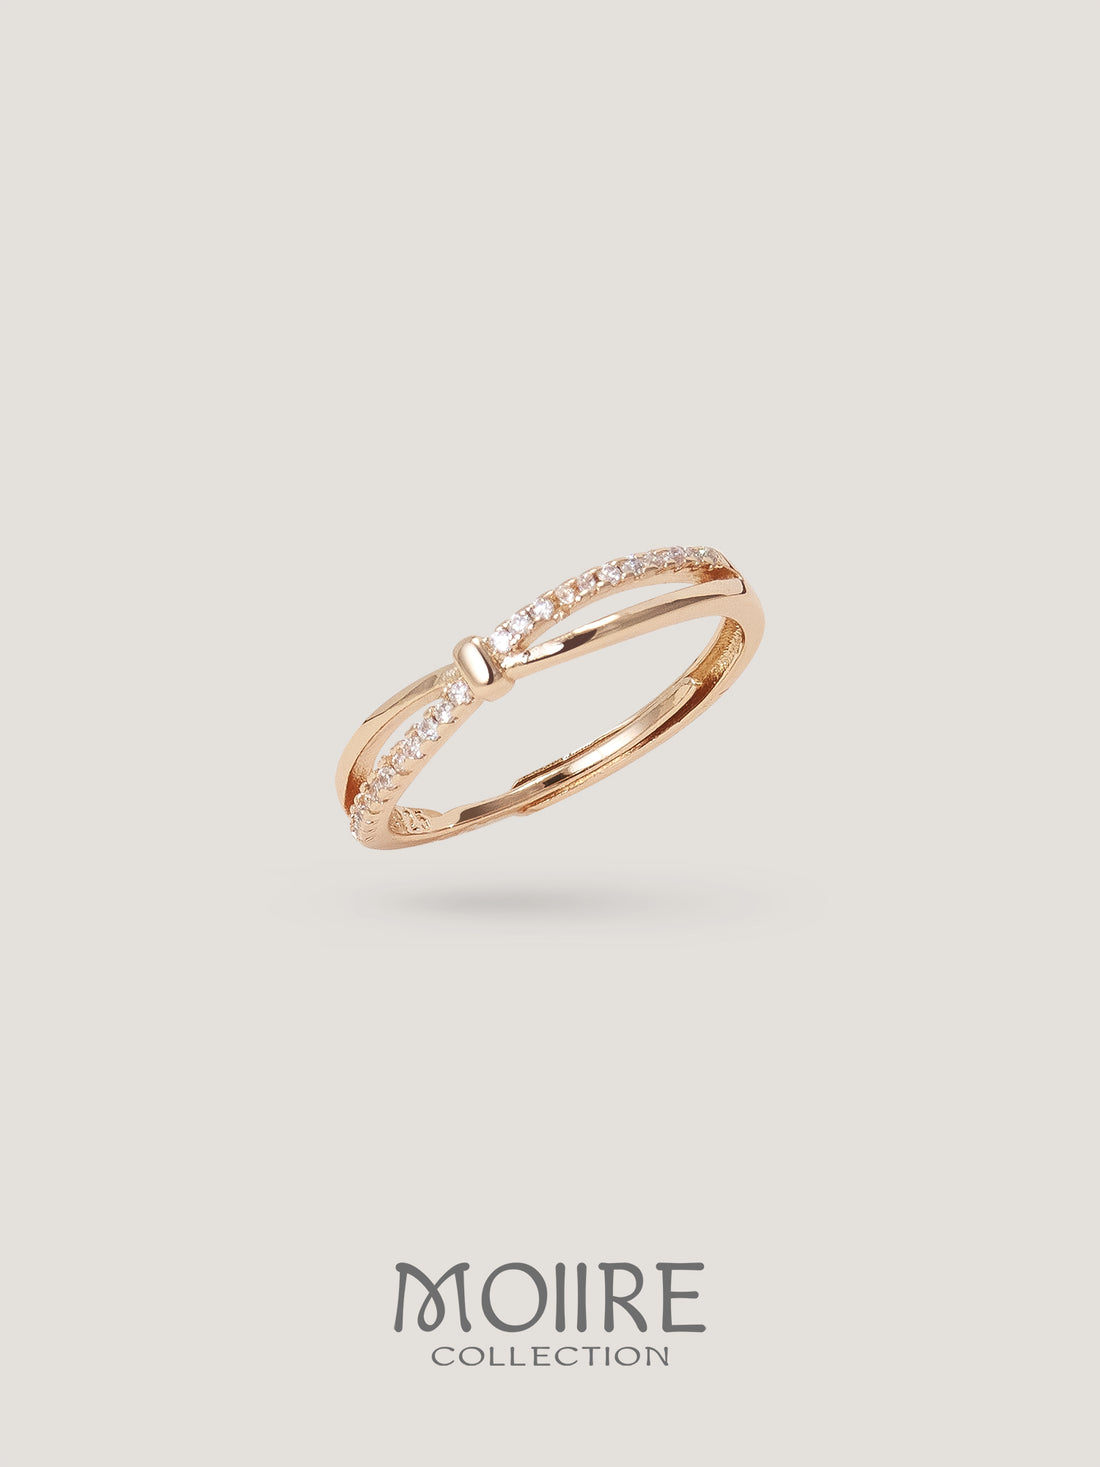 Moiire Jewelry | 永恆作品